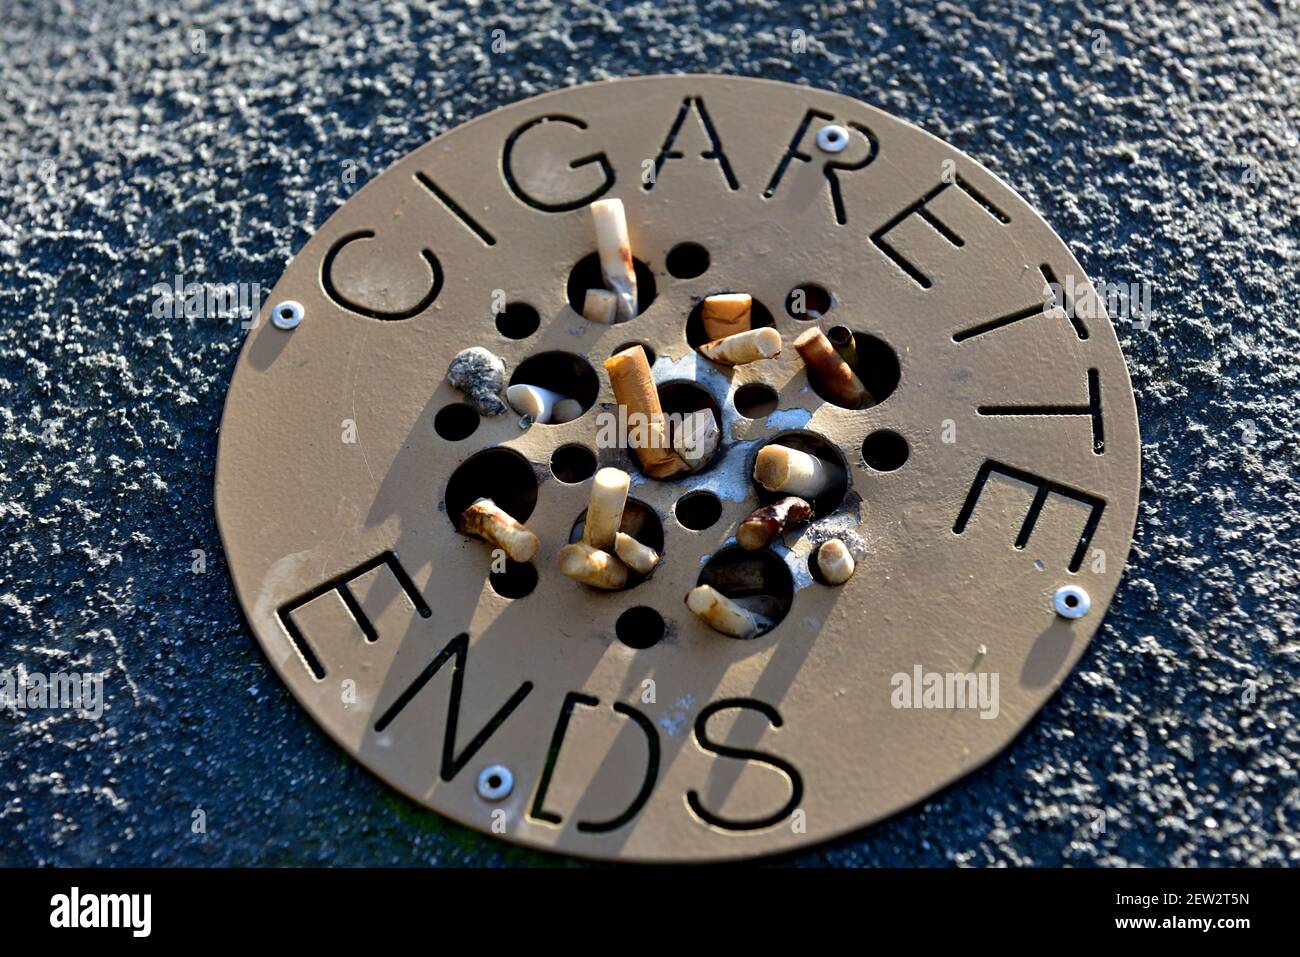 Cigarette ends in public ashtray Stock Photo